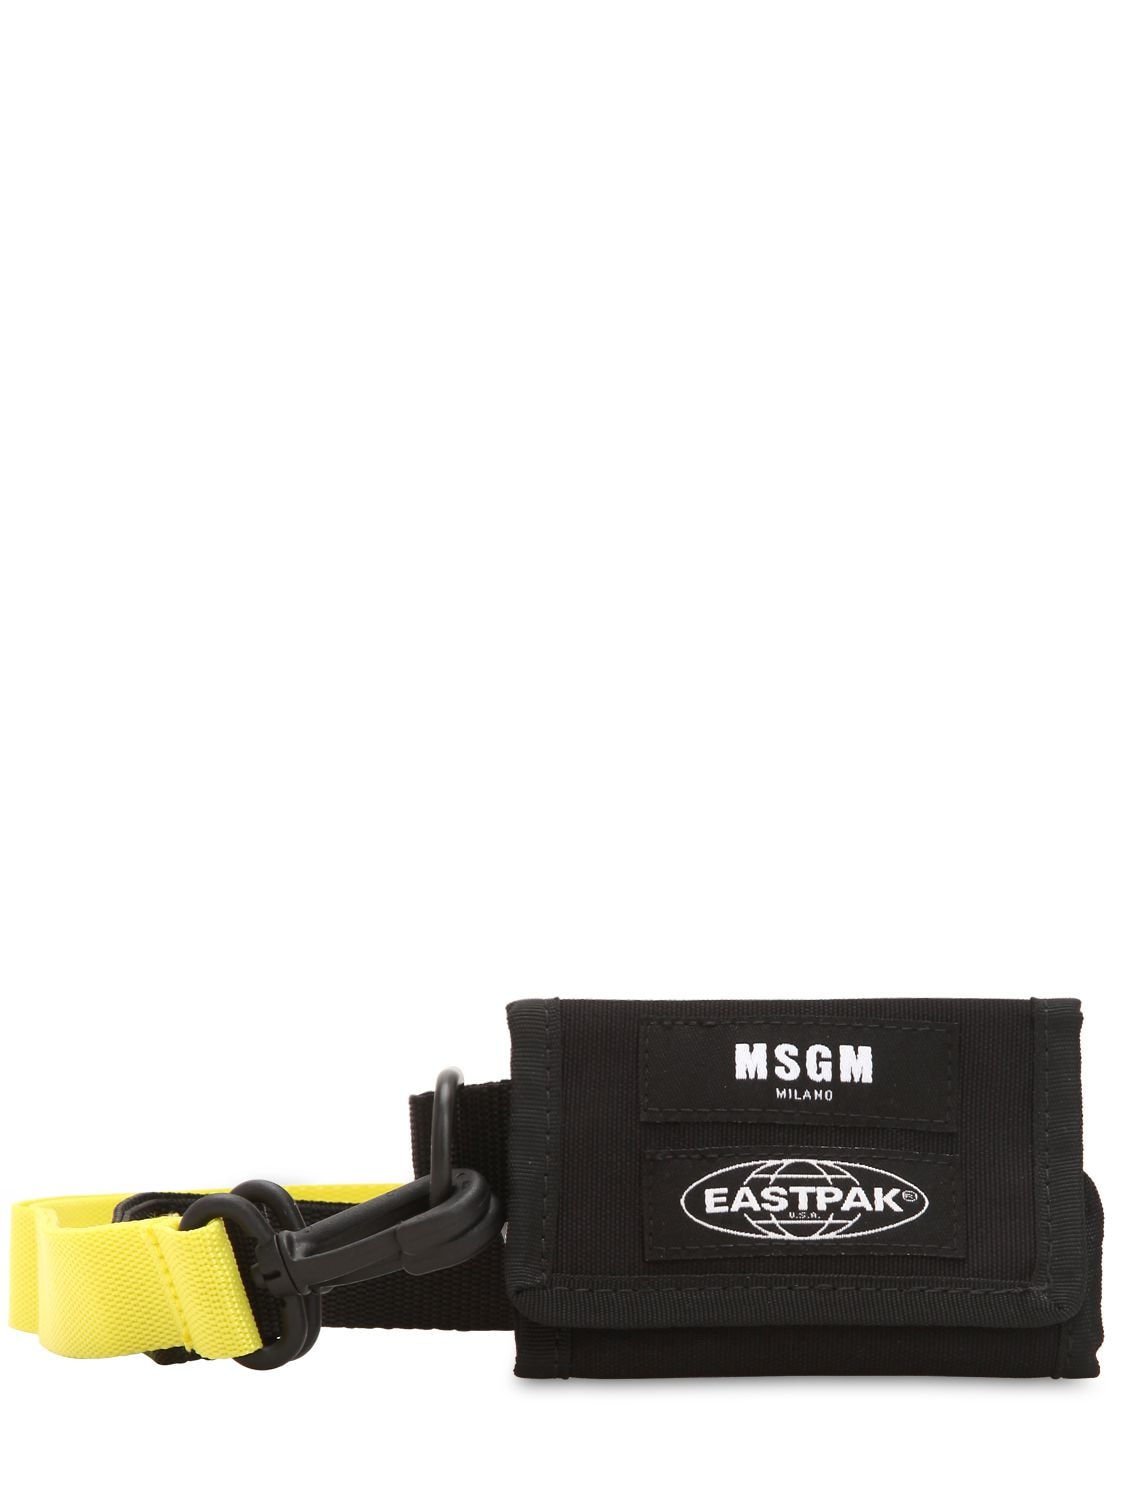 Eastpak By Msgm Eastpak Nylon Key Holder In Black